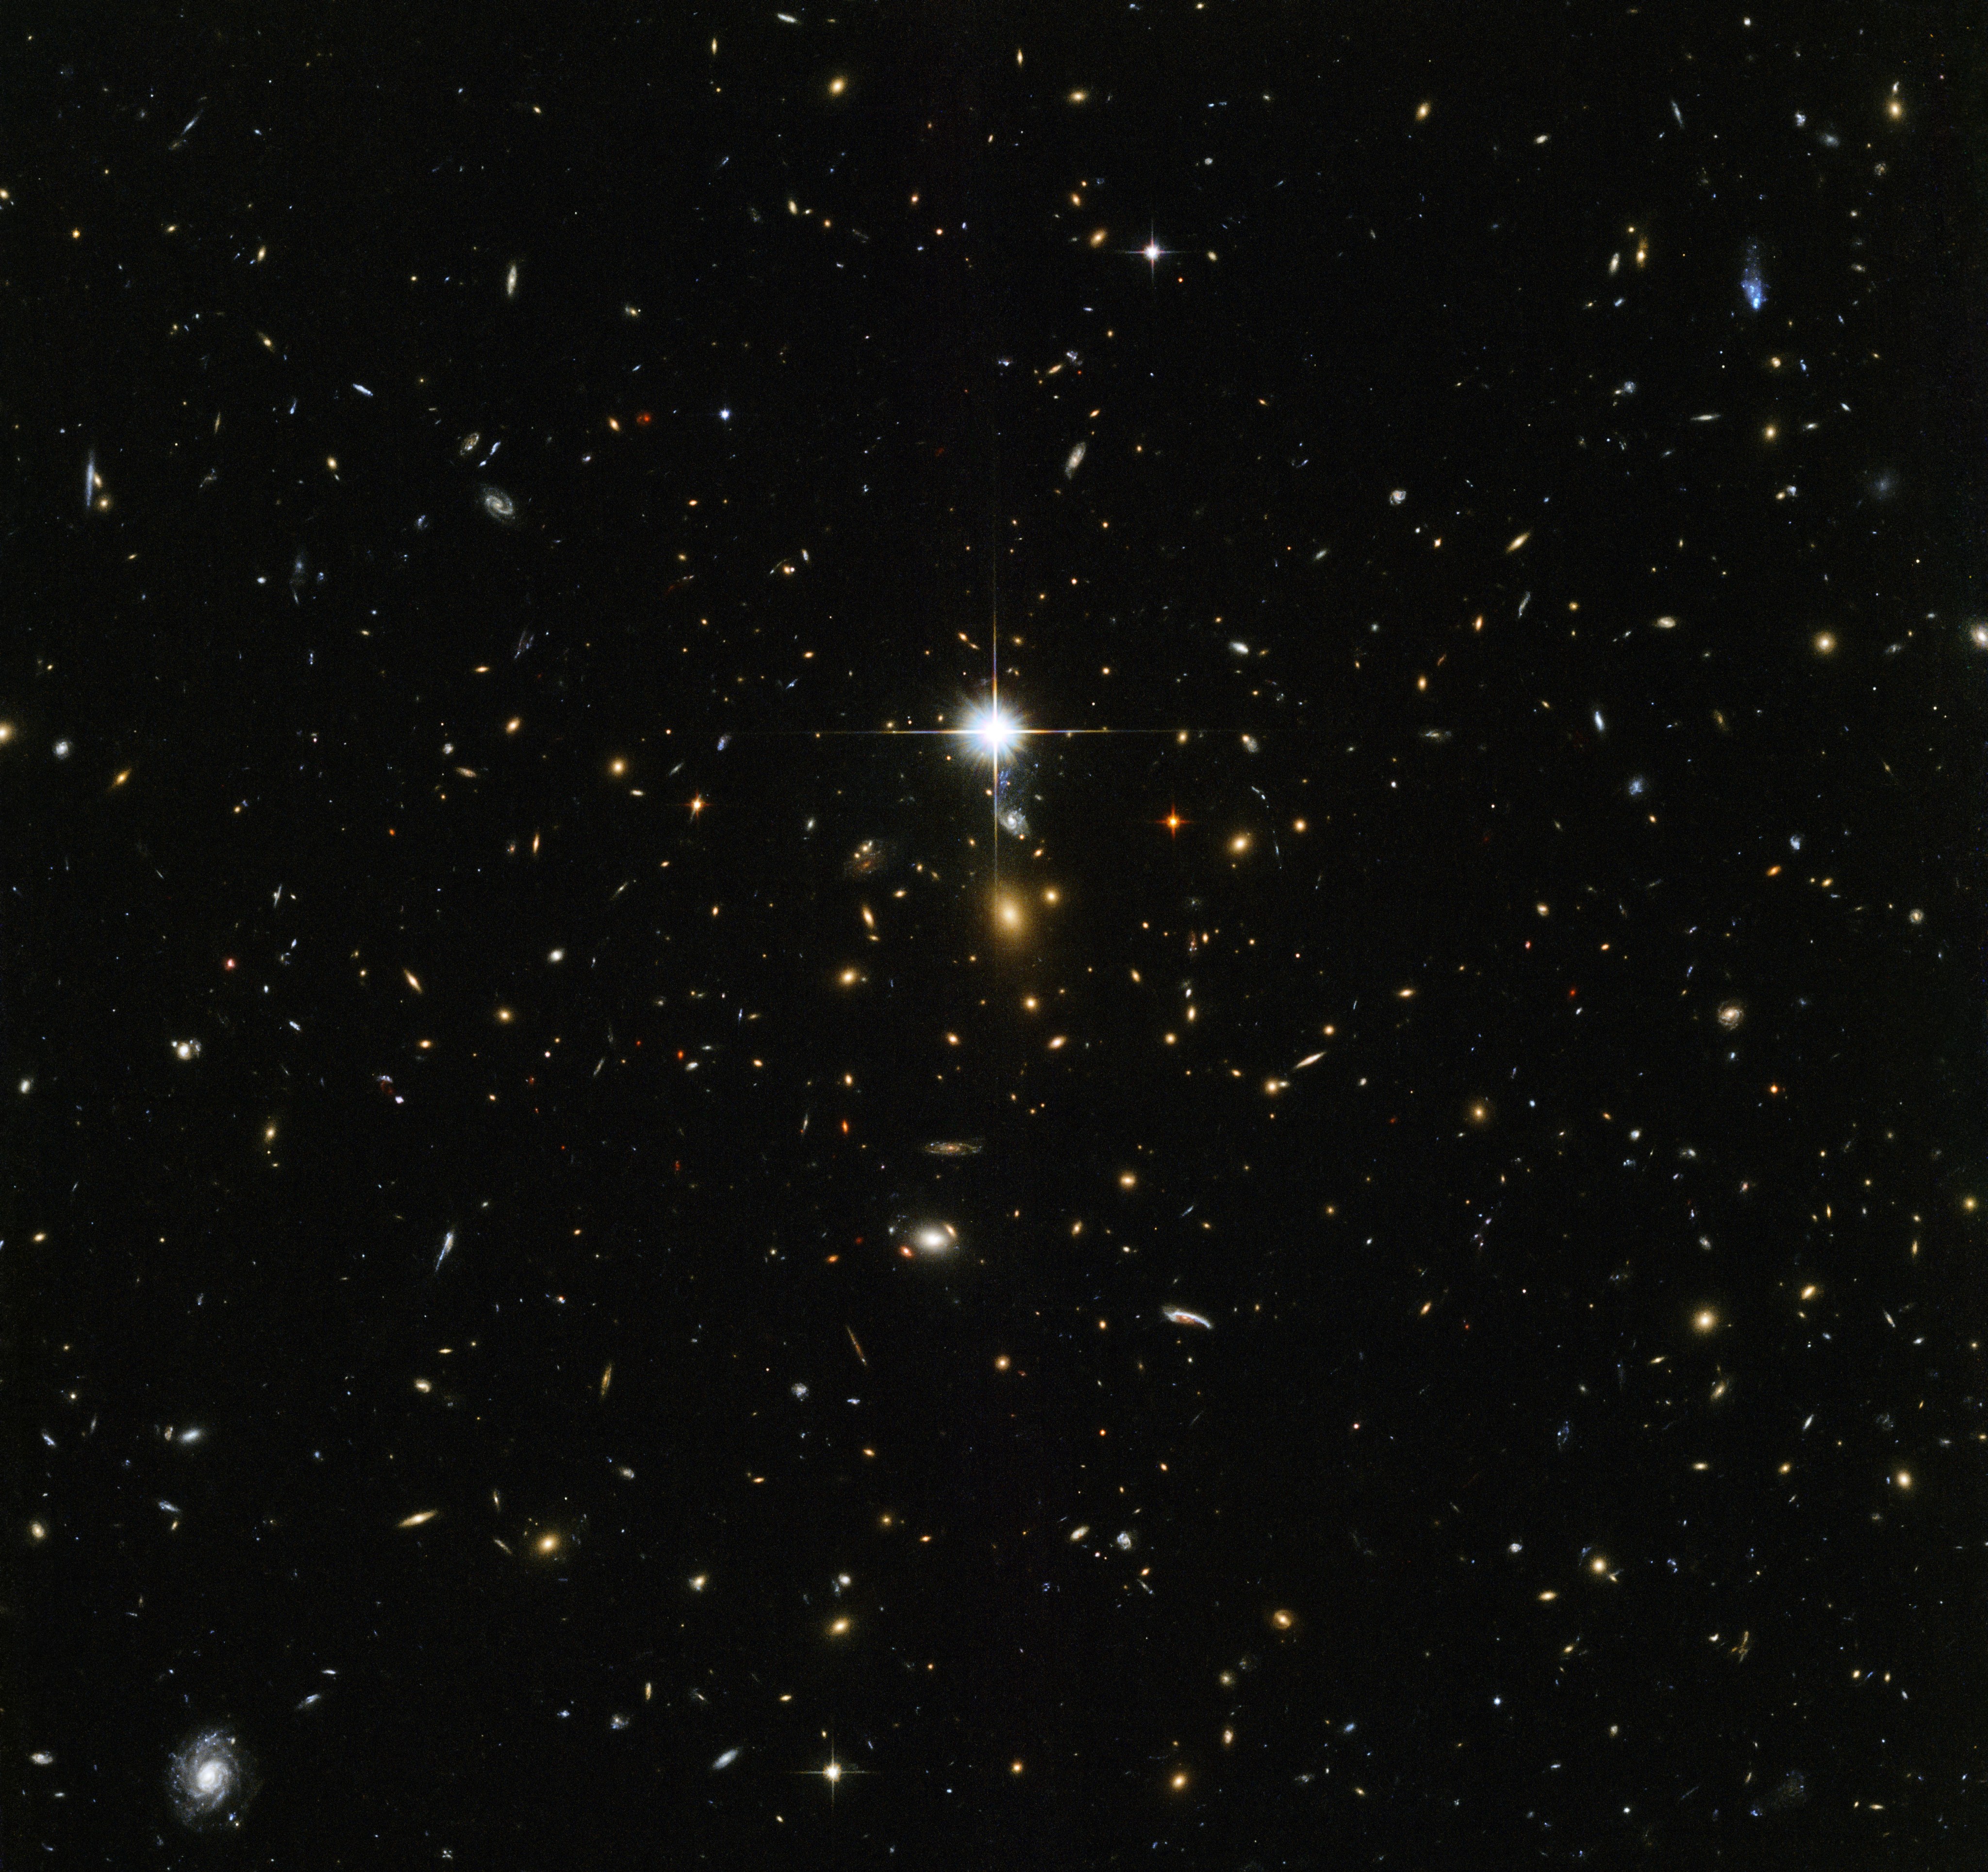 A bright field of star-like galaxies